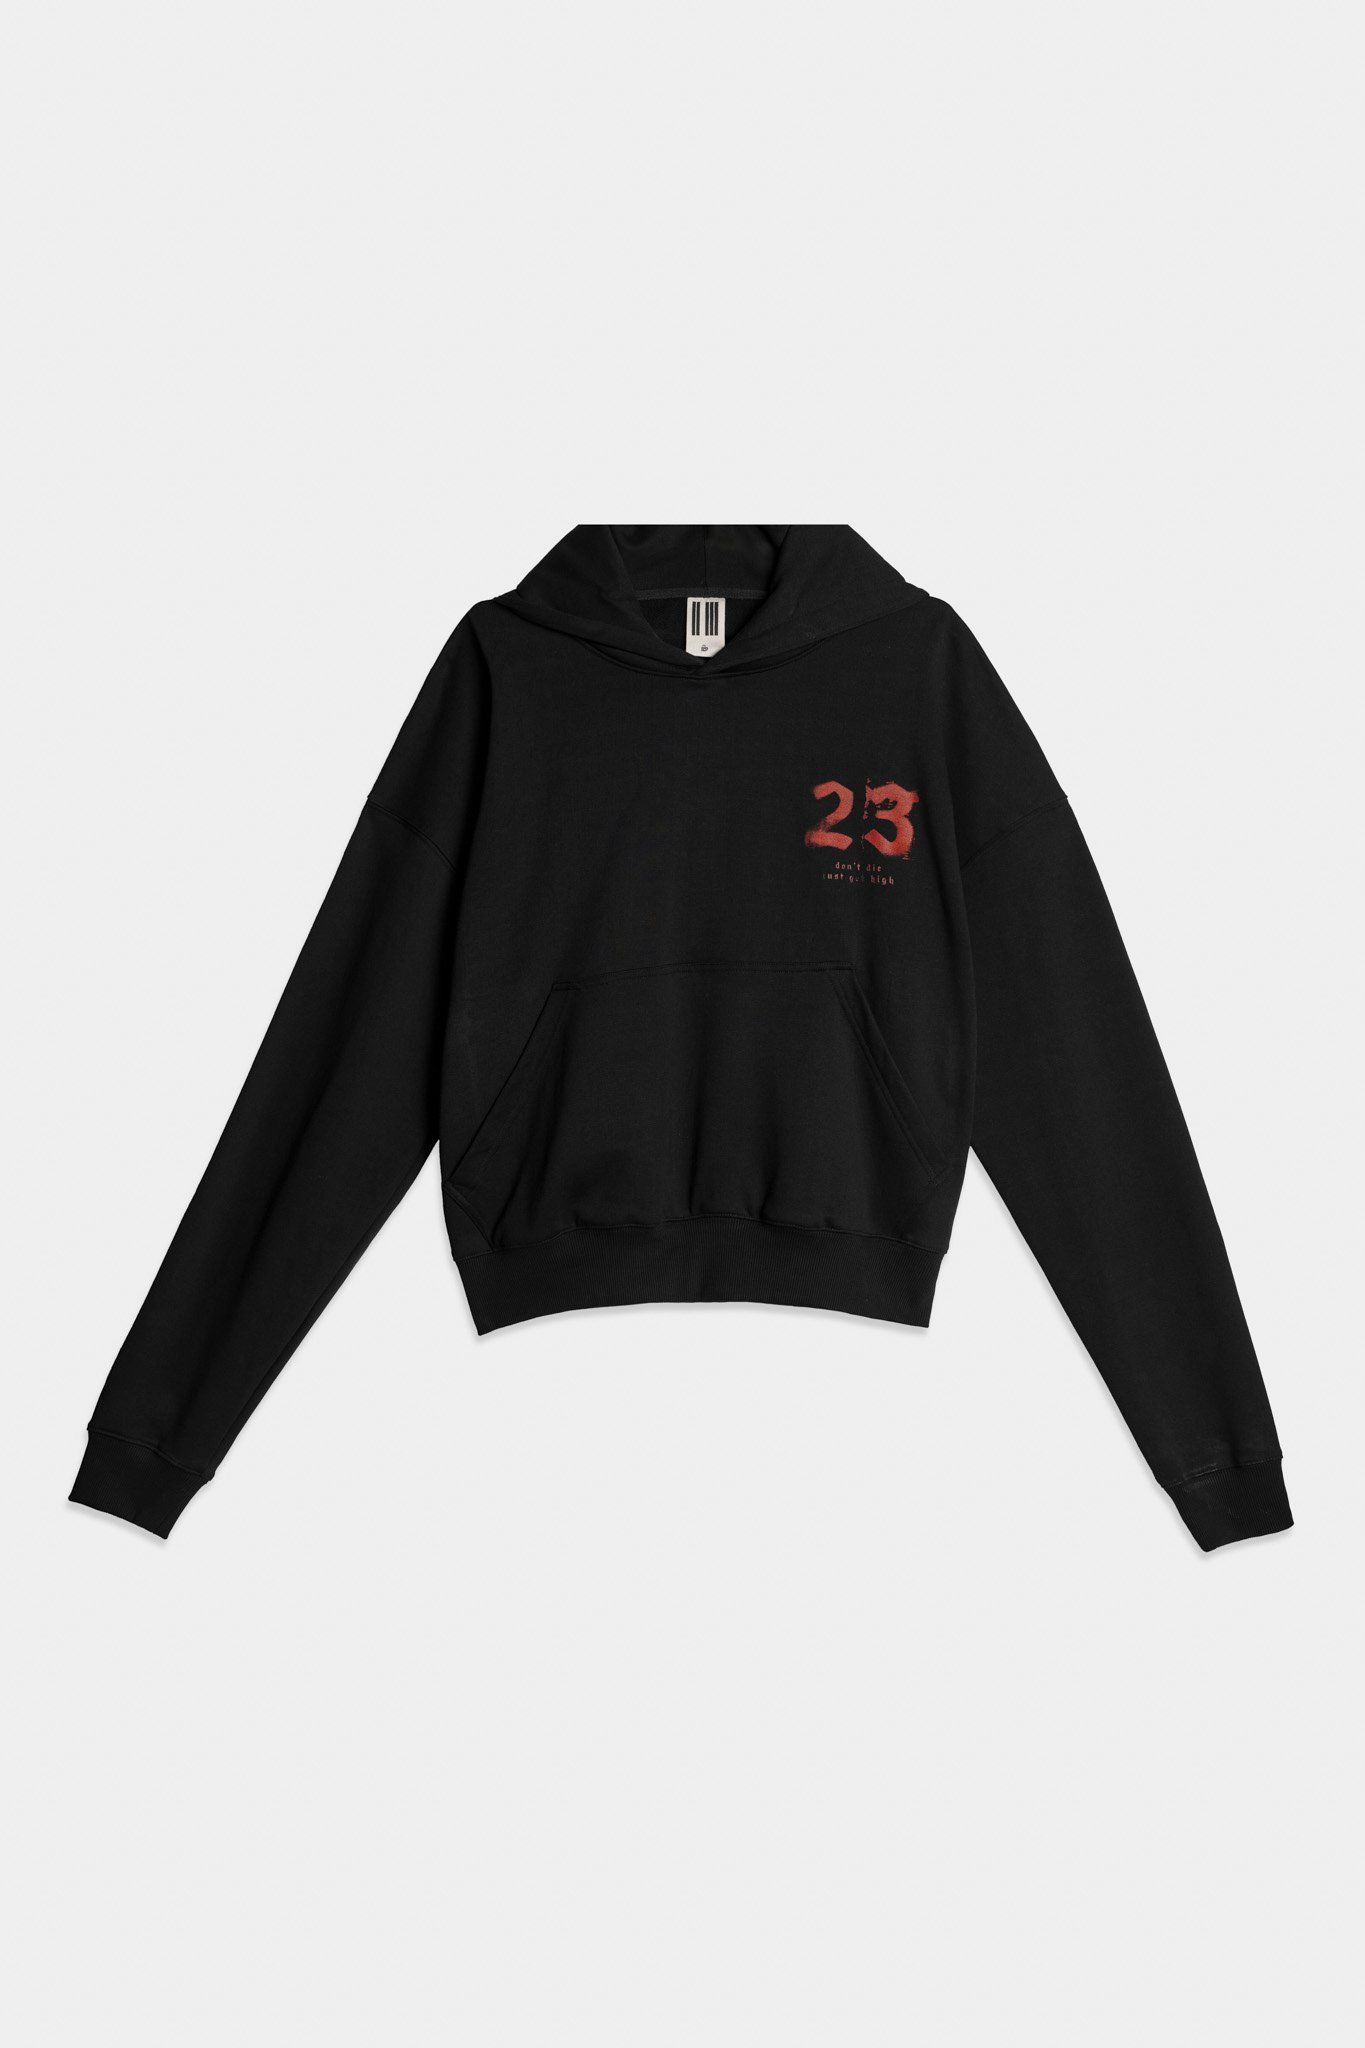  23'Logo Hoodie / Black 